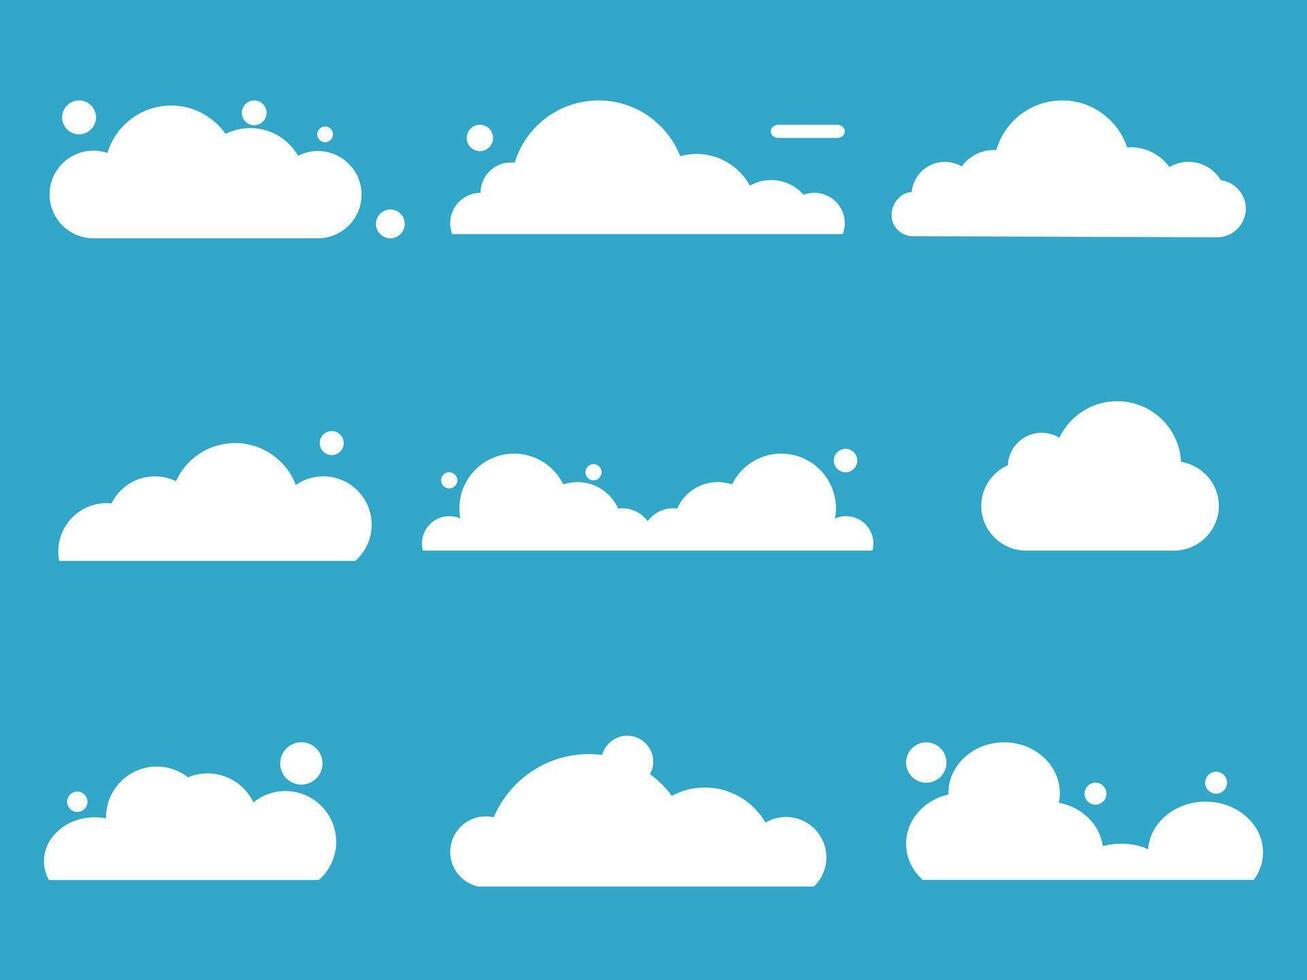 ensemble de des nuages. des nuages pour sites Internet et bannières conception vecteur